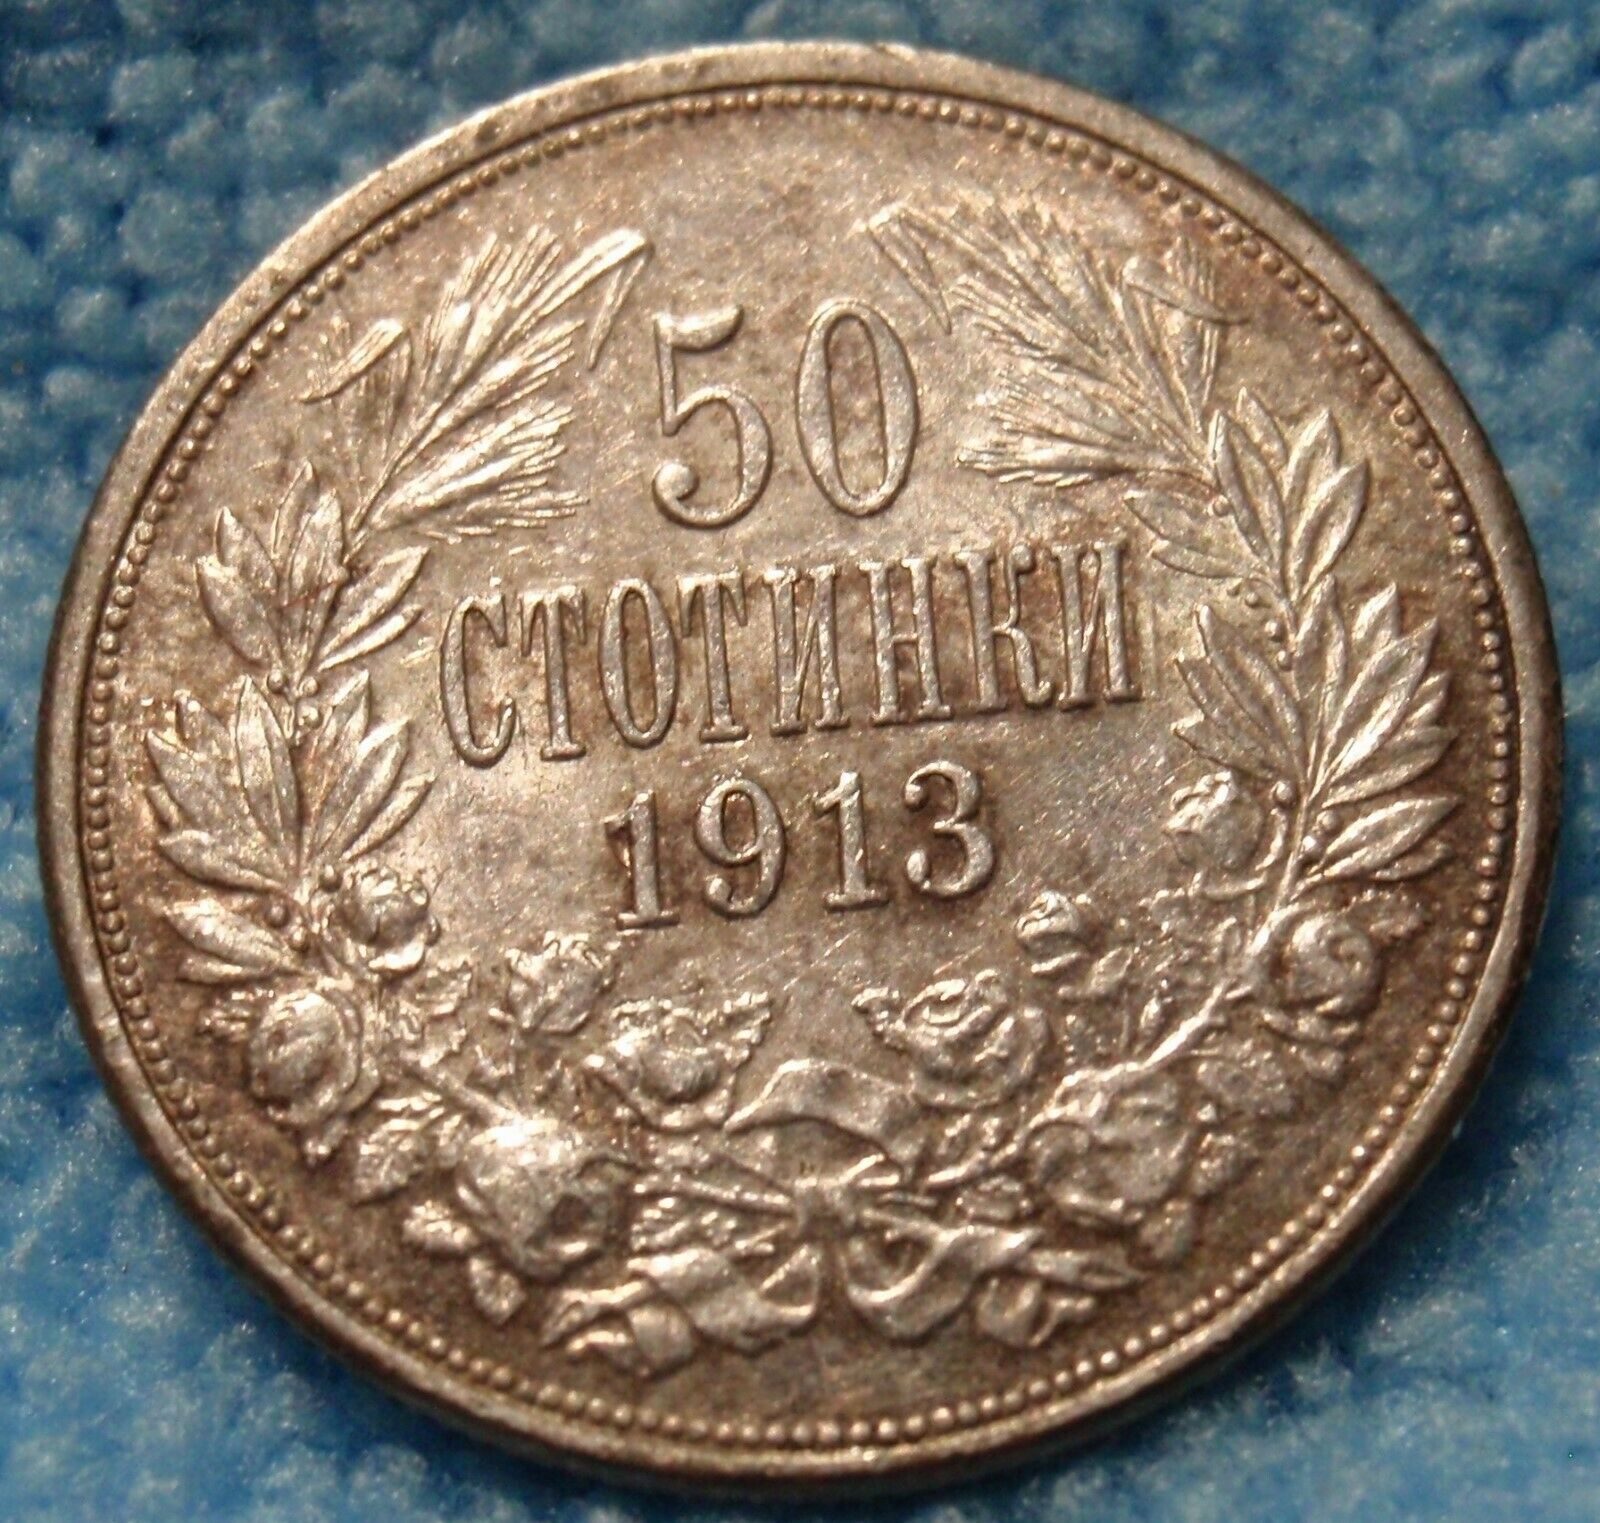 Bulgaria Au 1913 50 Stotinki Silver Coin Ferdinand I / Rare